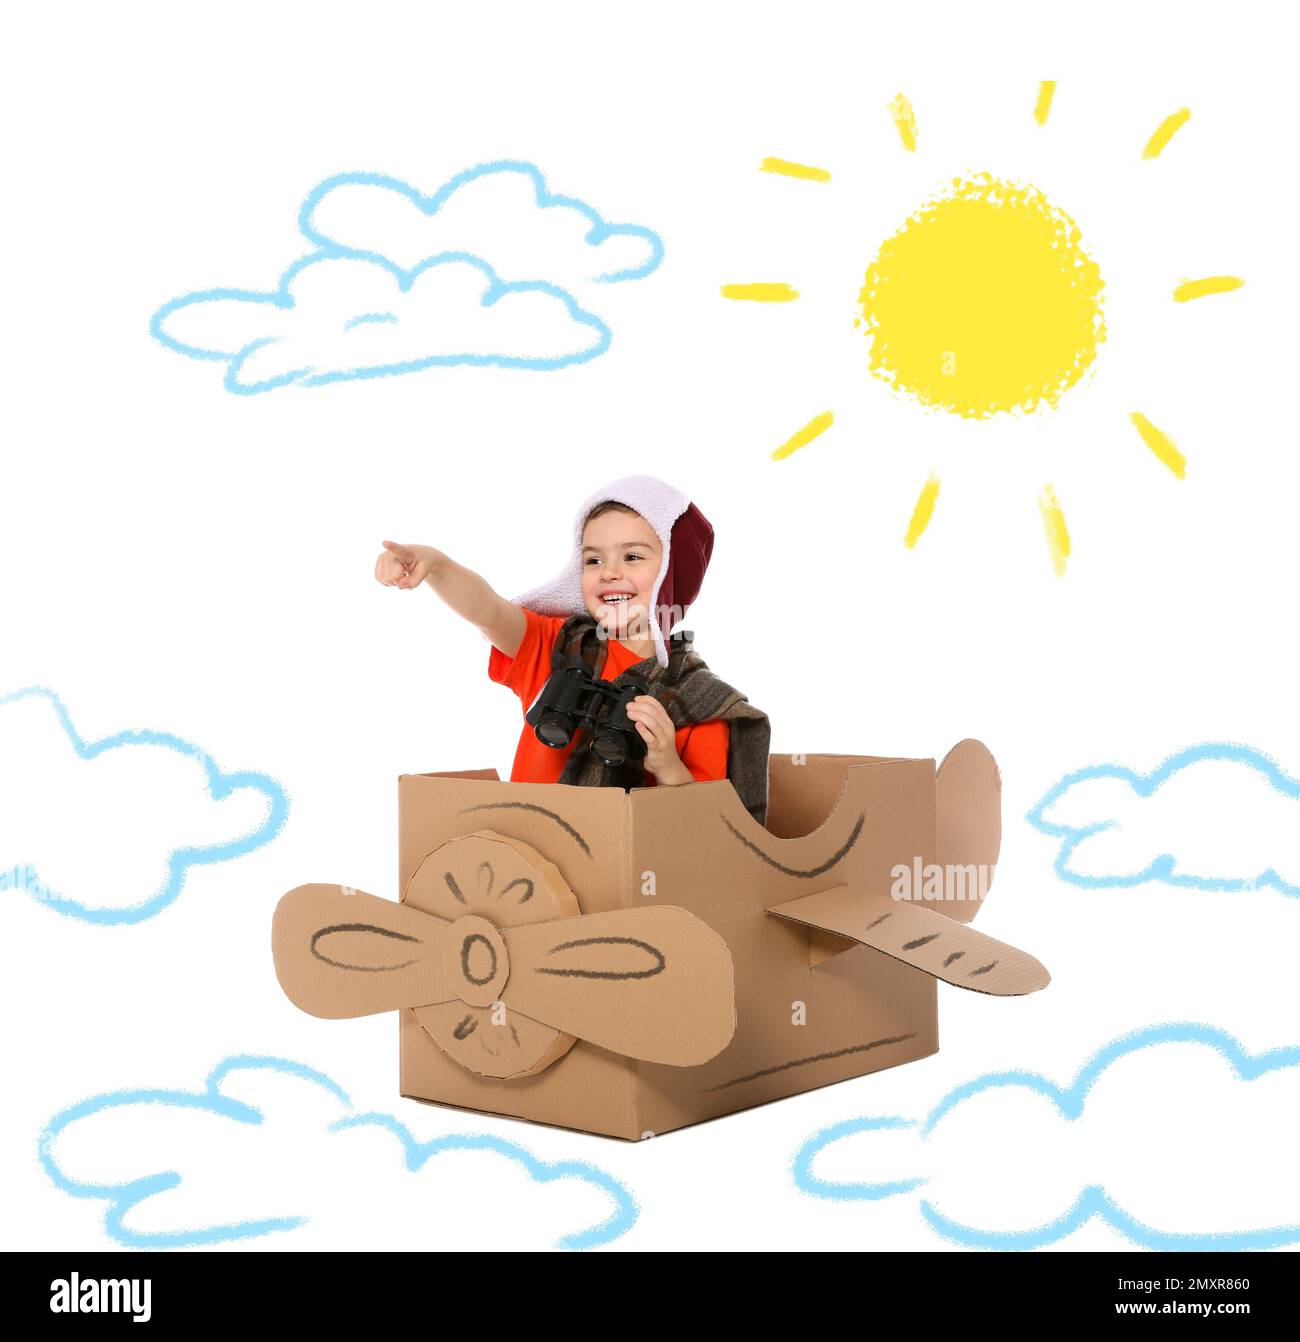 Mignon petit enfant jouant dans un avion en carton sur fond blanc avec des illustrations Banque D'Images